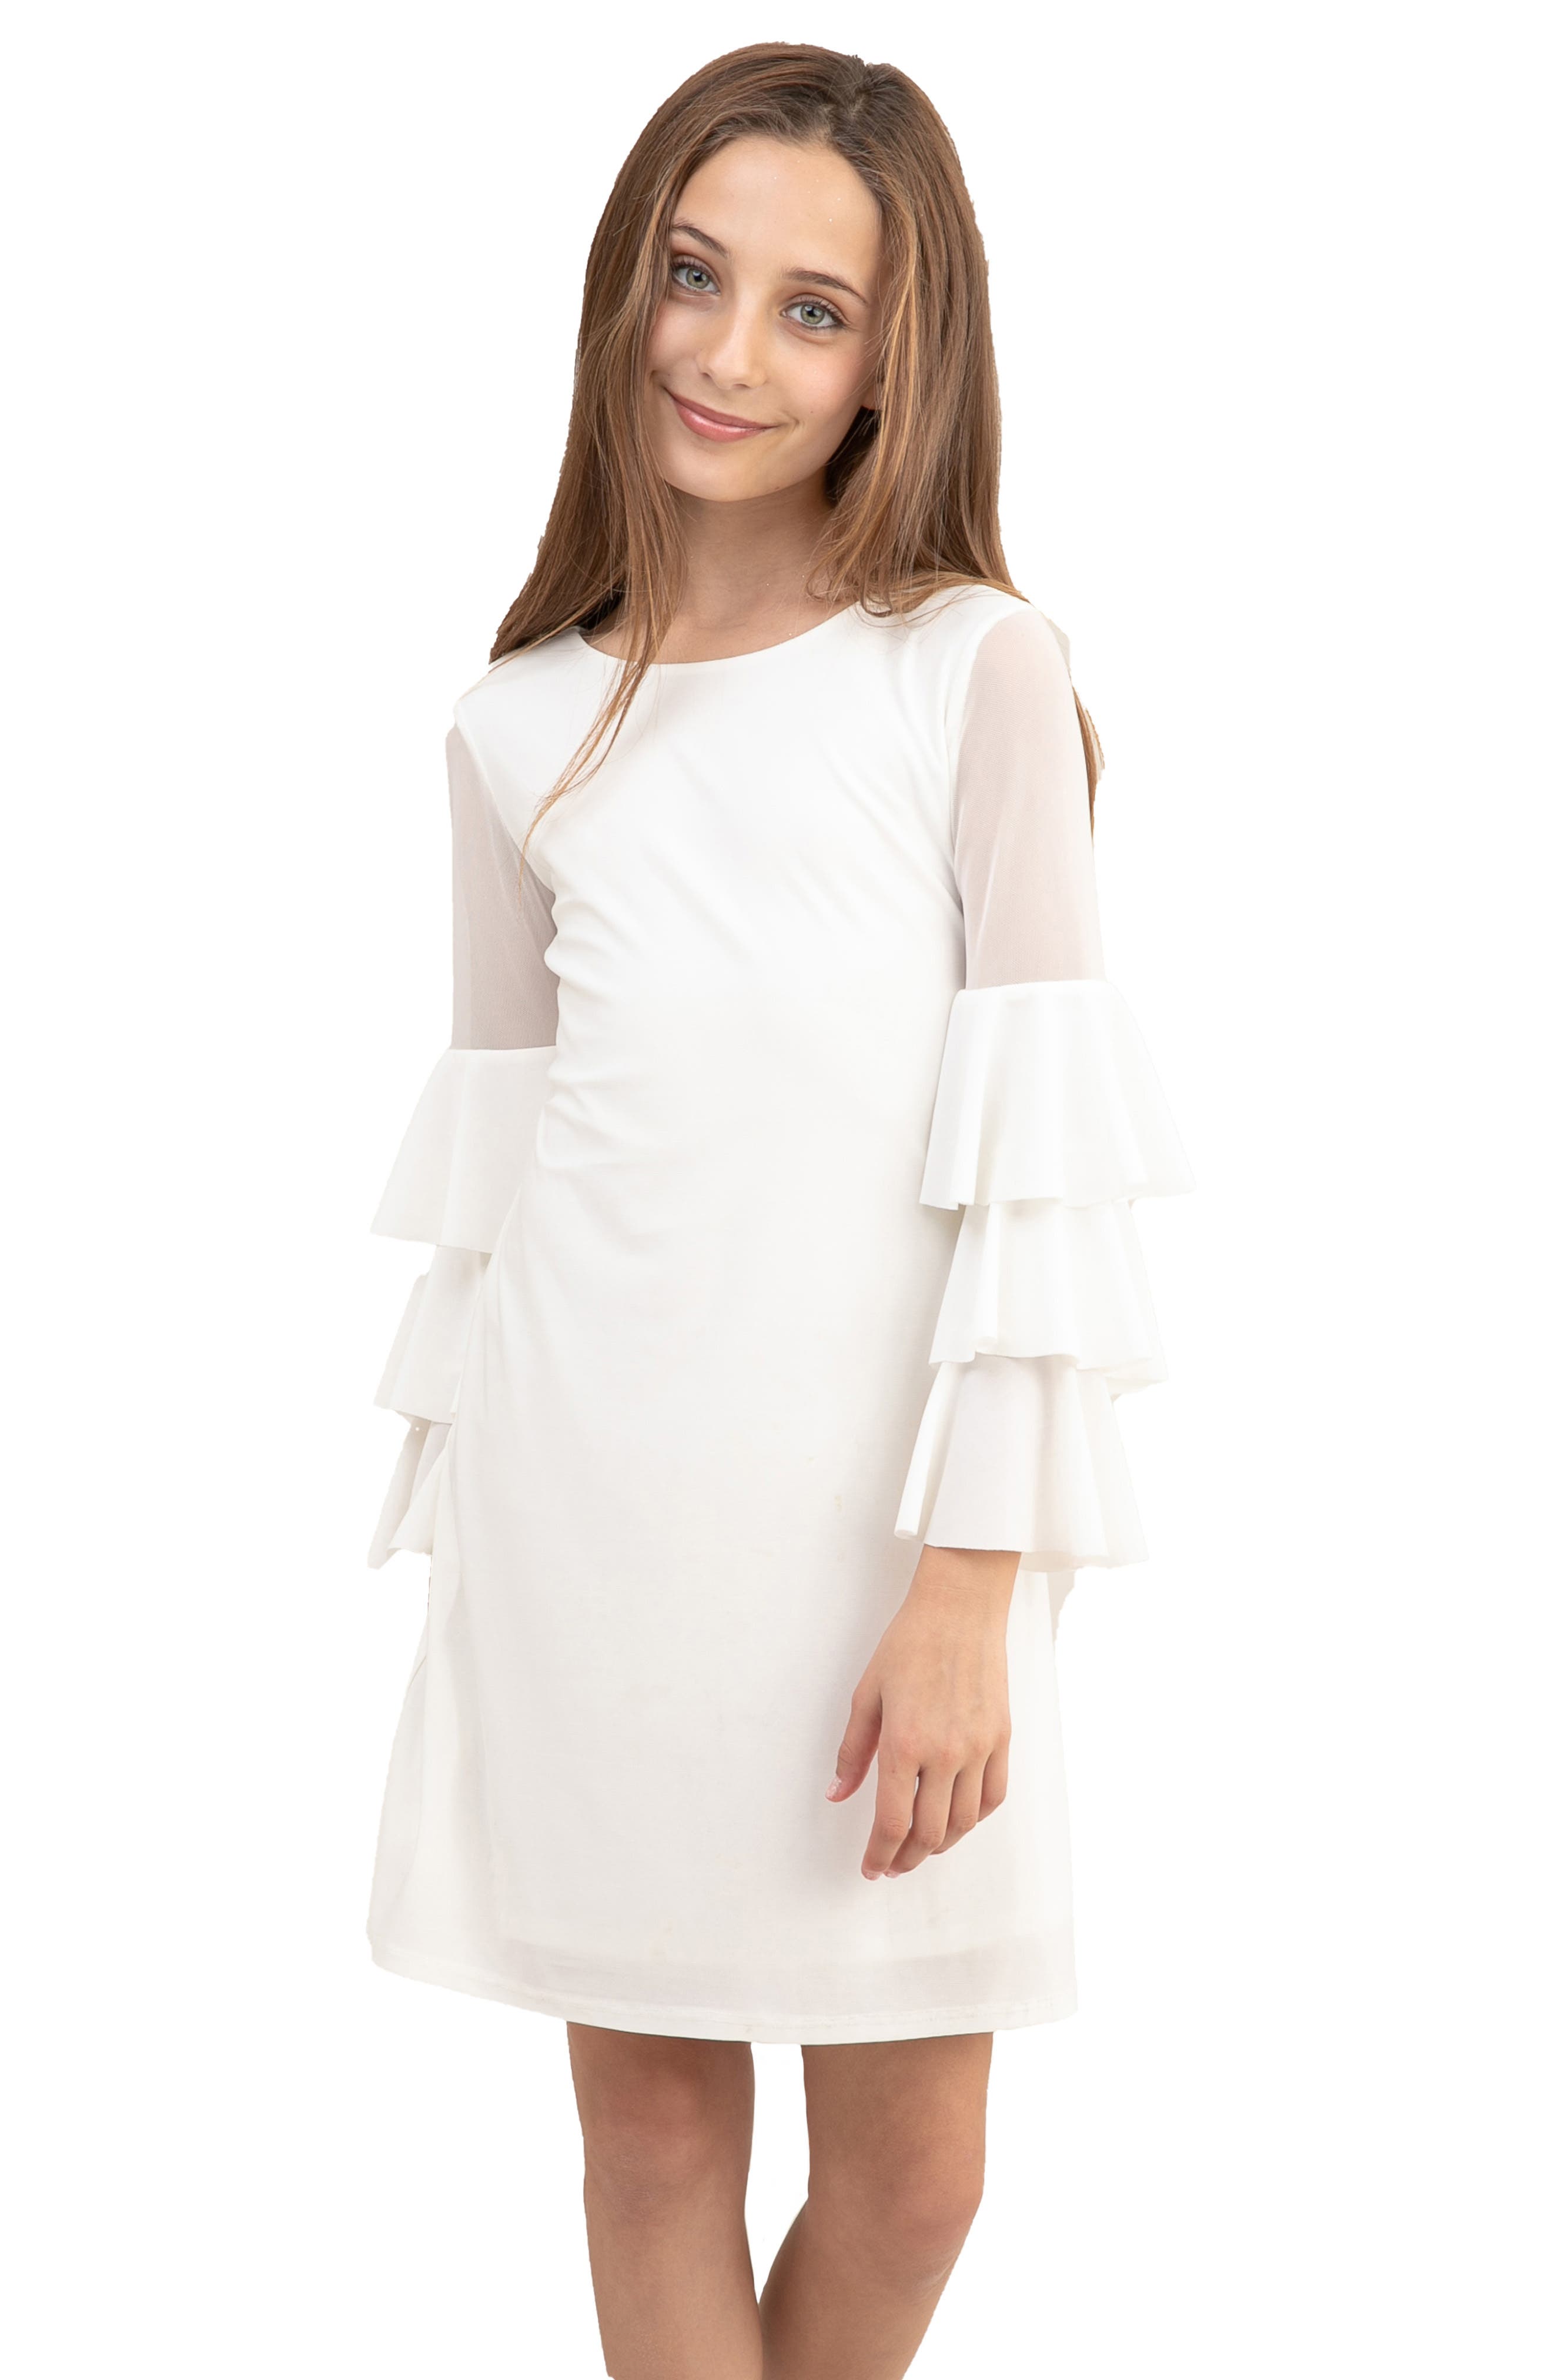 White Dresses for Little Girls